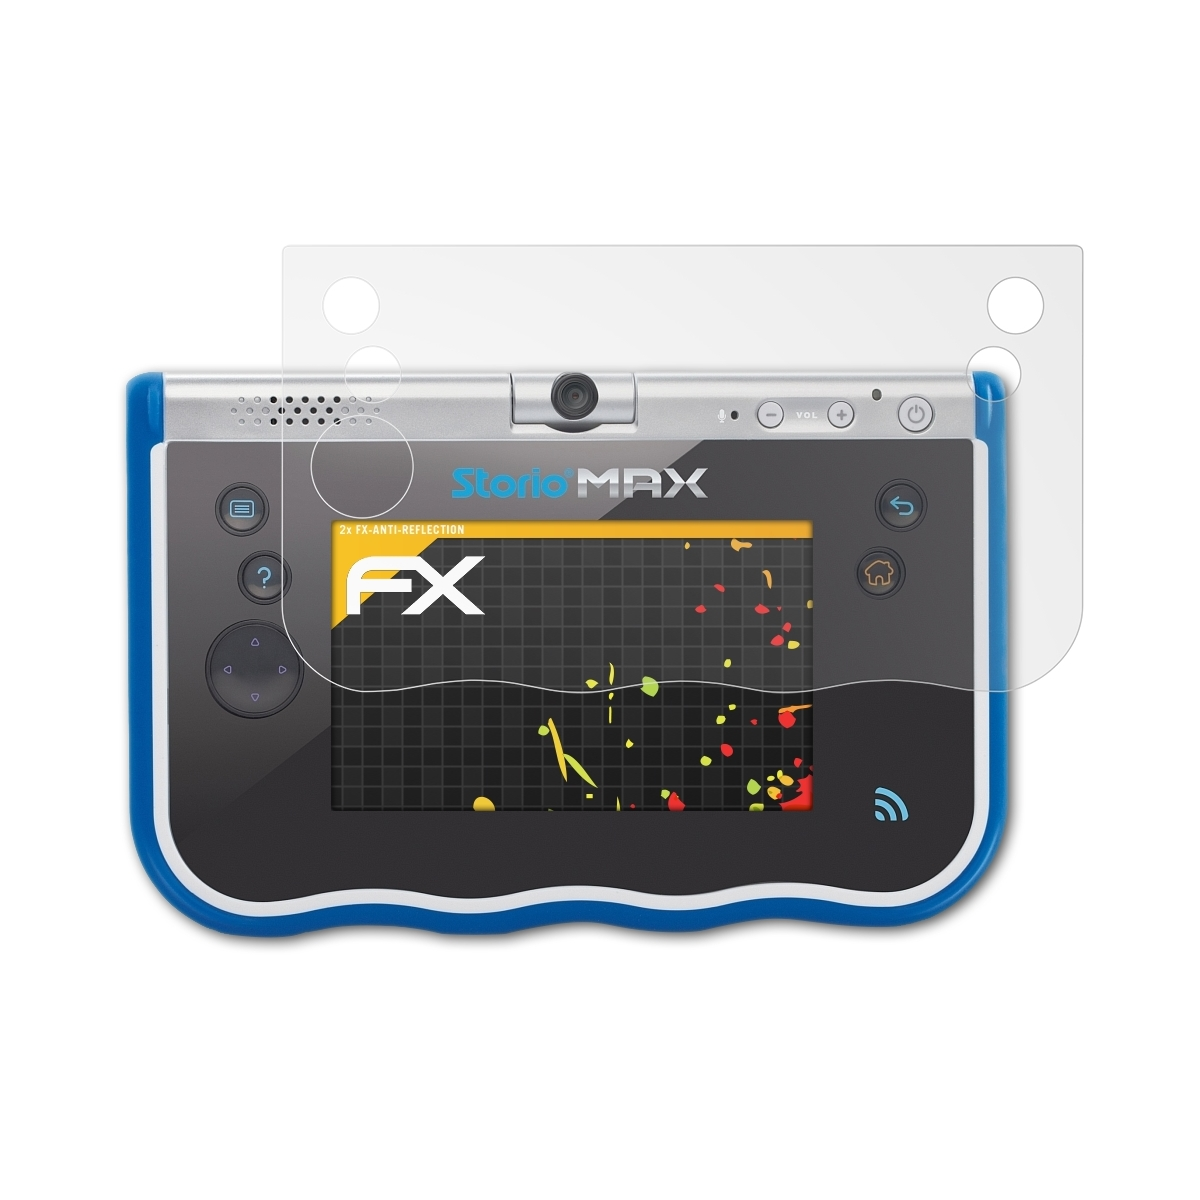 VTech 2x FX-Antireflex ATFOLIX Max Displayschutz(für Storio 5)